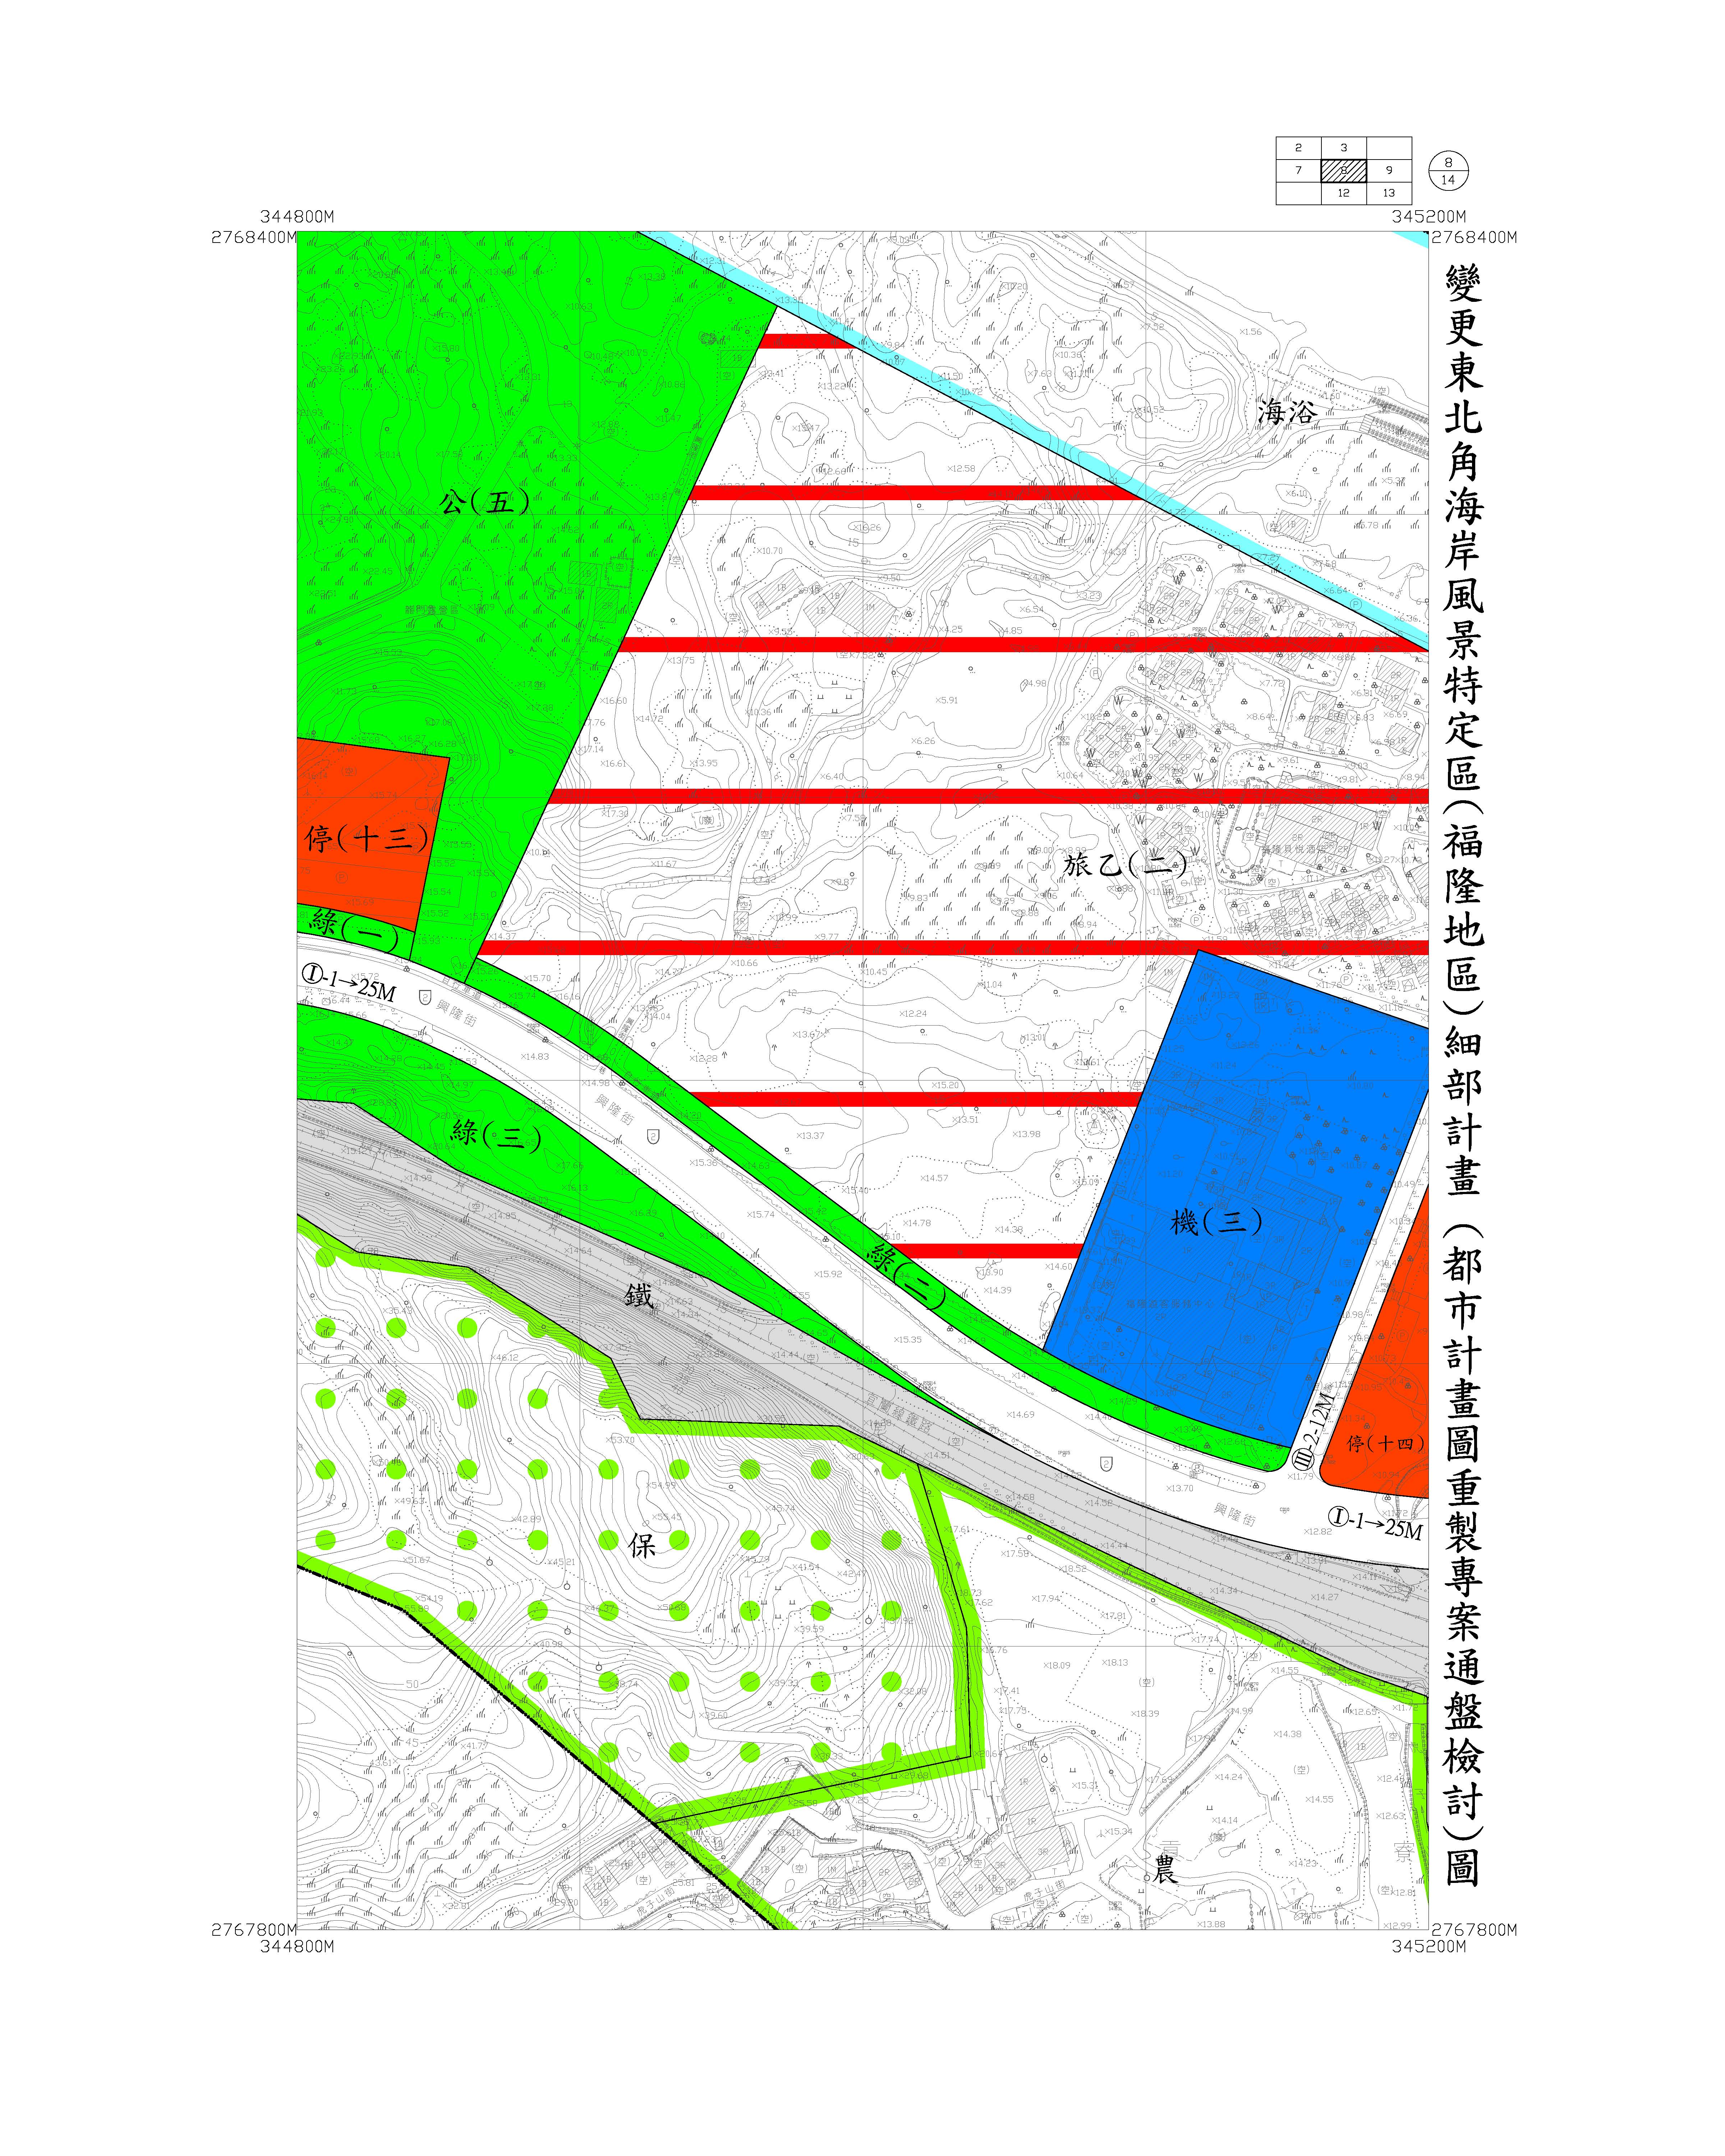 福隆地區都市計畫圖重製專案通盤檢討圖資12